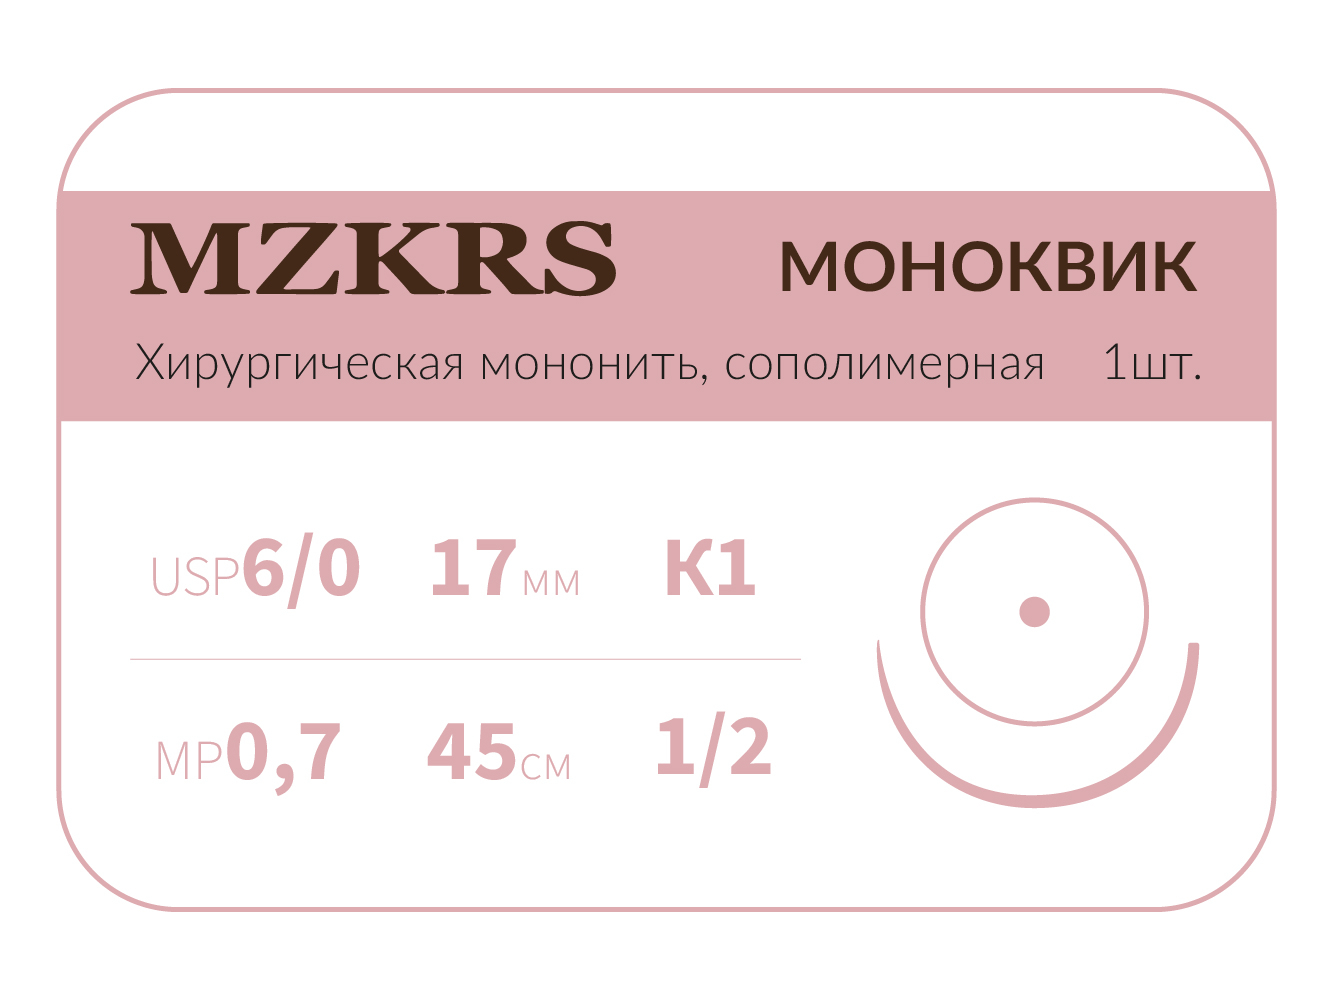 1712К1 Premium-6/0 (0,7)45 МОНК МОНОКВИК хирургическая мононить, сополимерная, колющая игла, MZKRS (Россия)